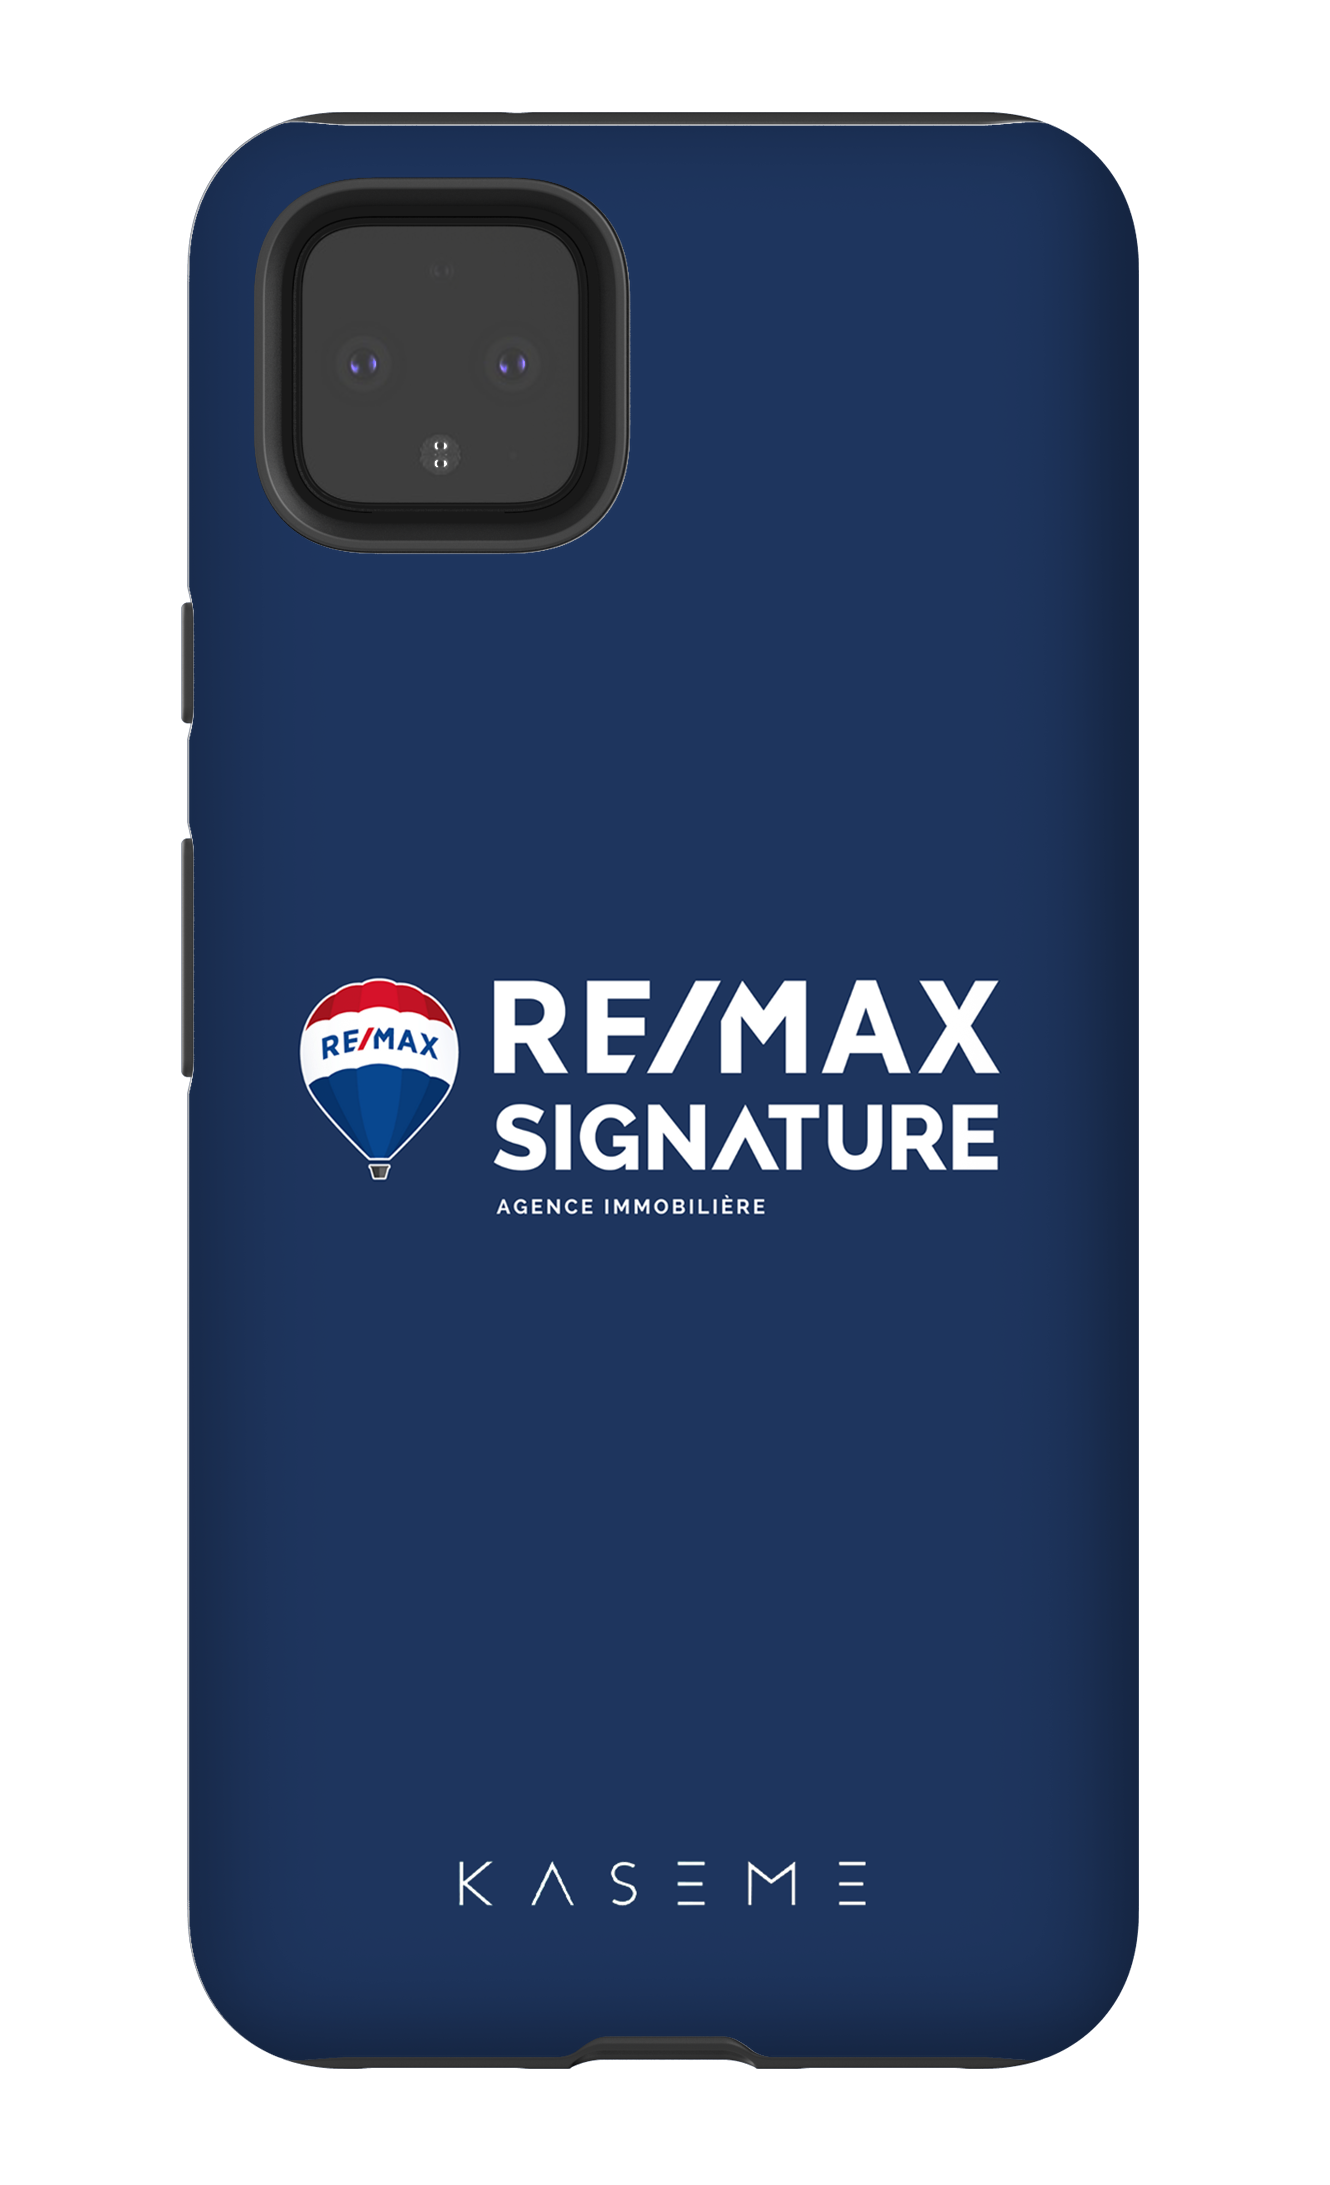 Remax Signature Bleu - Google Pixel 4 XL